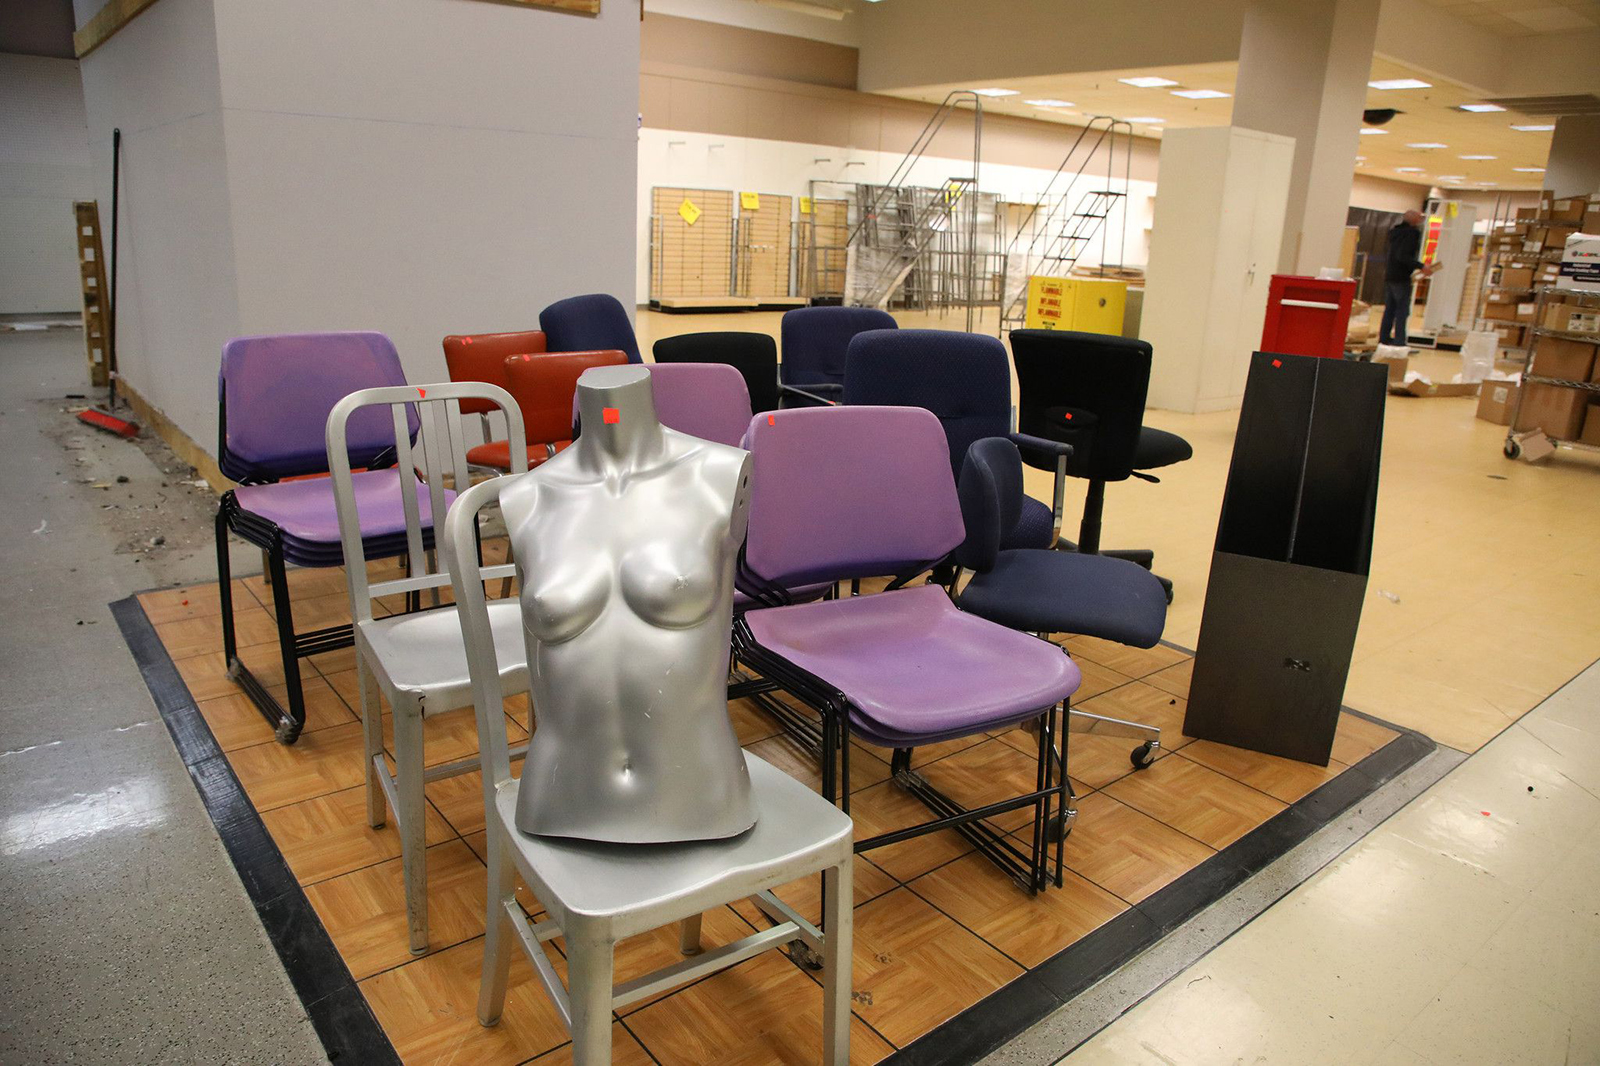 en del av en skyltdocka kan ses på en stol i den snart stängda Sears-butiken på Woodfield Mall, torsdag, Nov. 11, 2021, i Schaumburg, Illinois. (Stacey Wescott / Chicago Tribune / Tribune News Service via Getty Images)